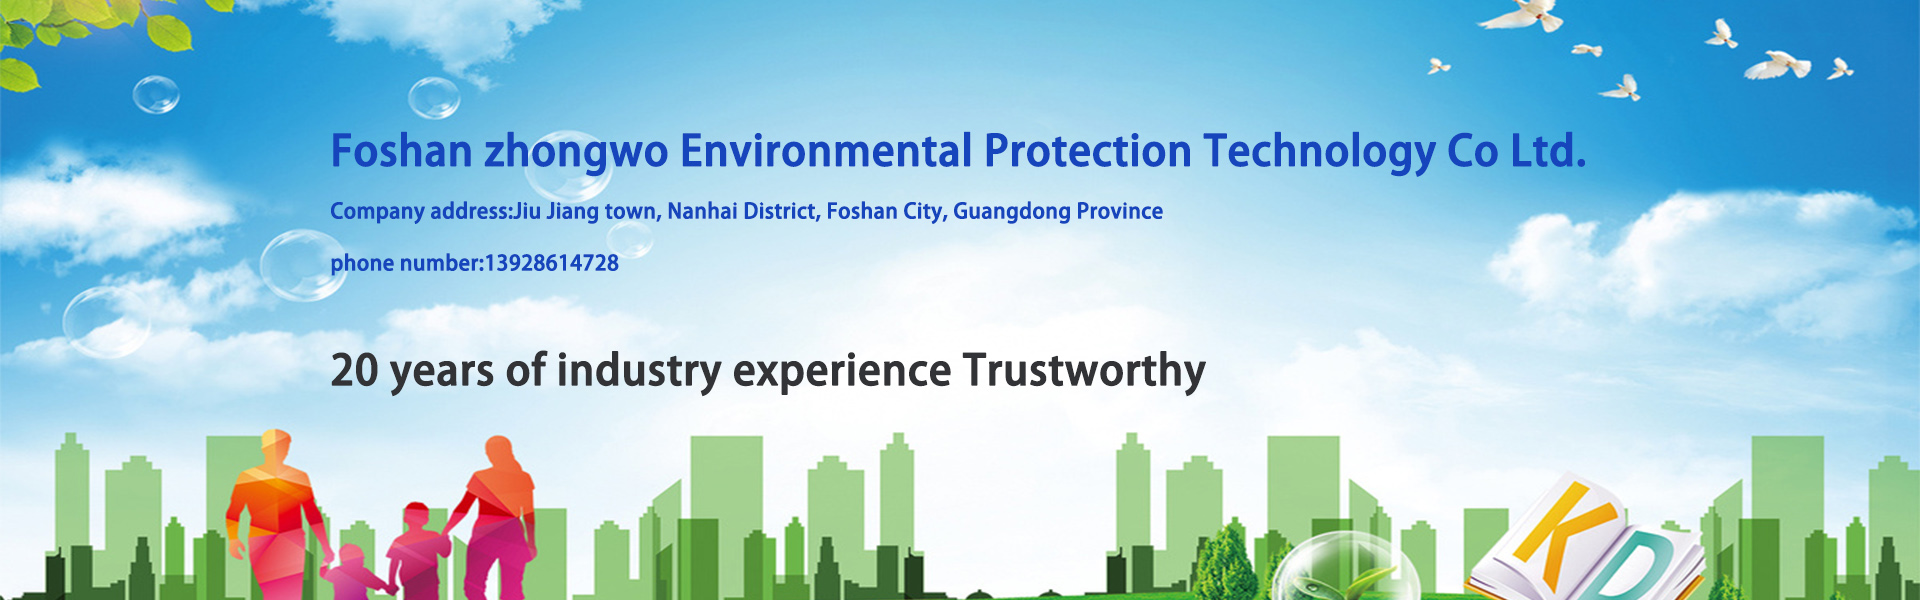 水処理装置、浄水装置、環境保護装置,Foshan zhongwo Environmental Protection Technology Co Ltd.